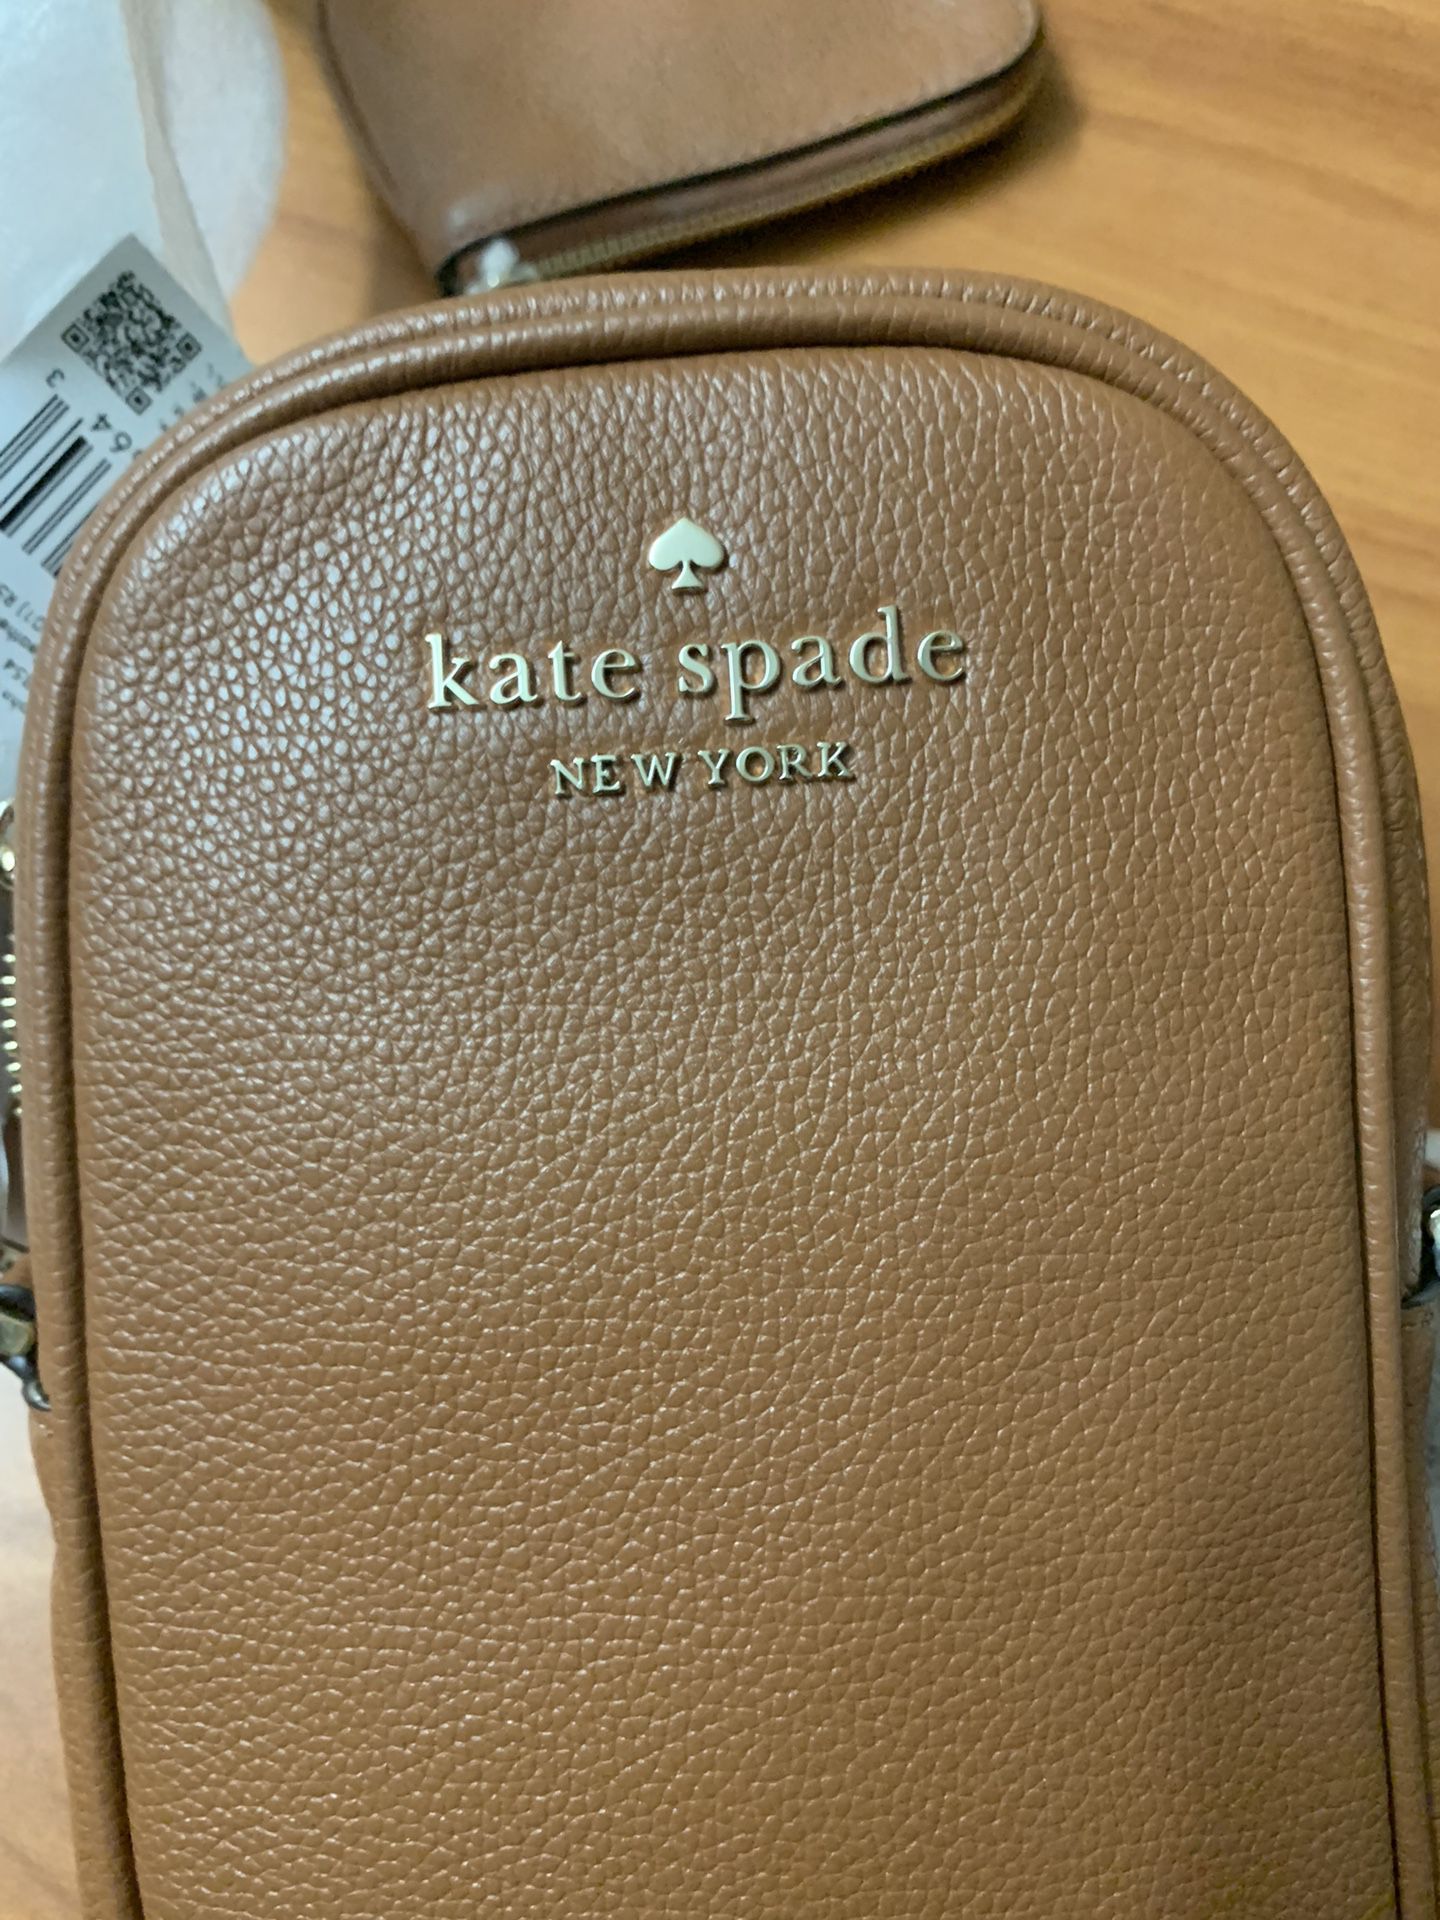 Kate Spade NY Side Bag And Purse